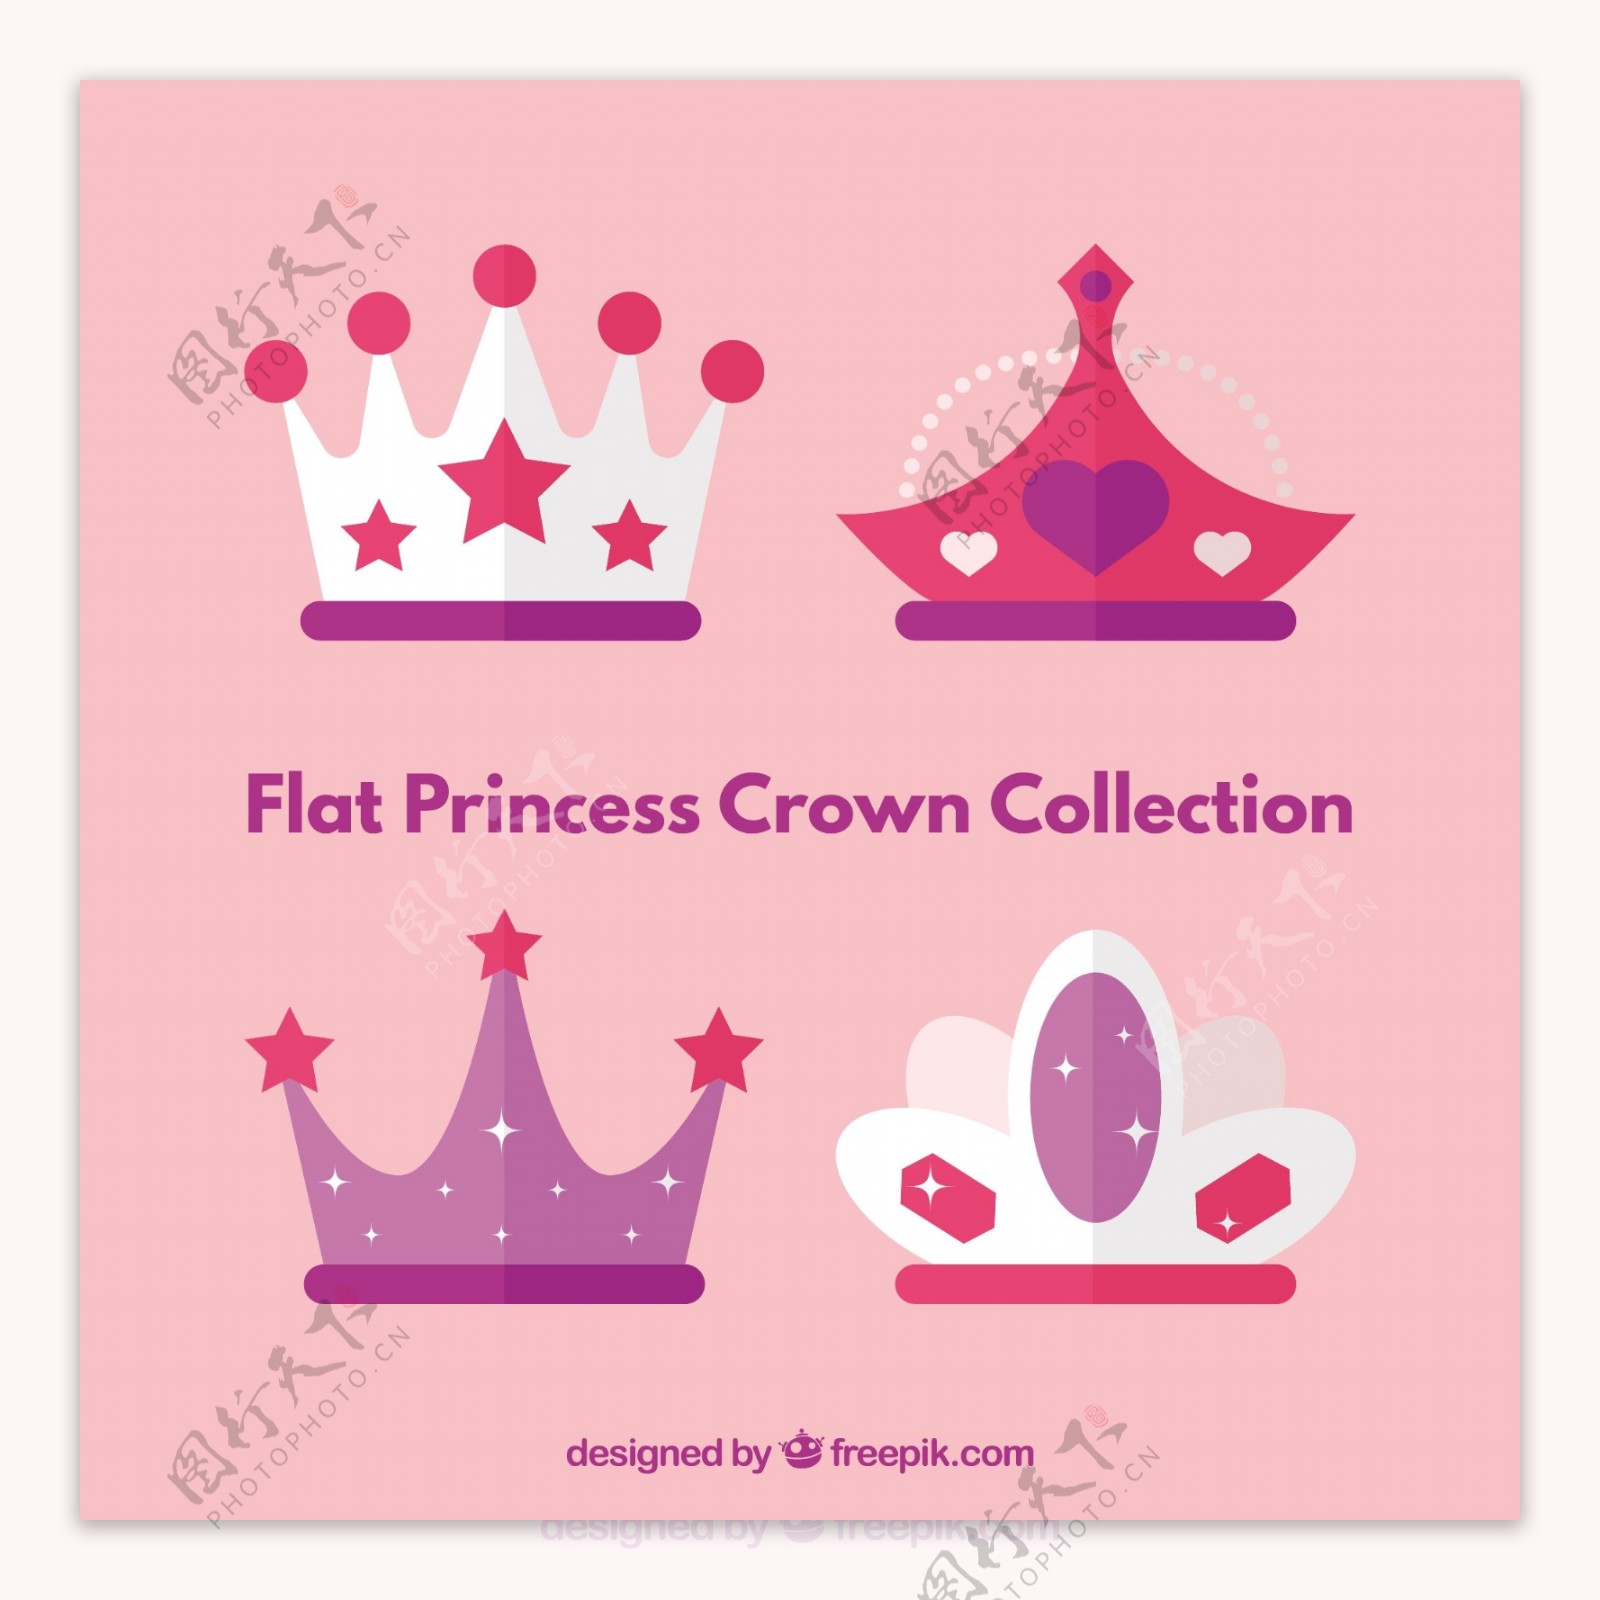 彩色公主桂冠图标设计